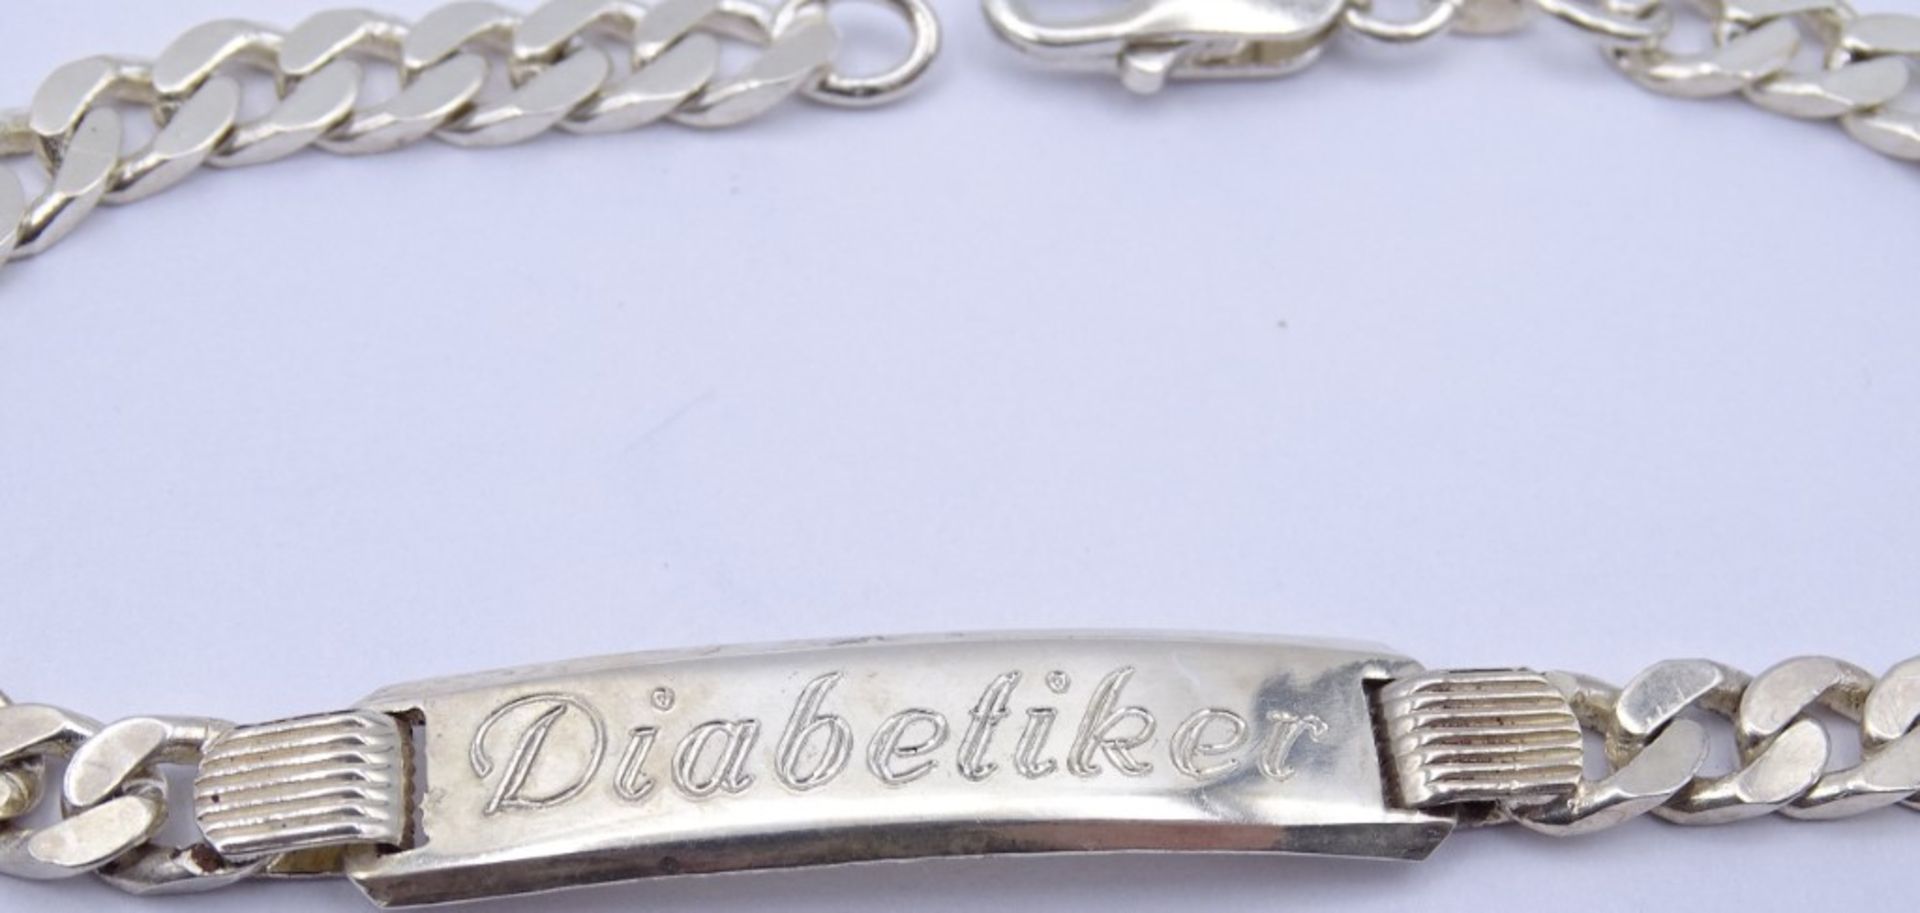 925er Silber Herren Armband mit Gravur "Diabetiker", L. 22cm, 16,6g. - Bild 3 aus 3